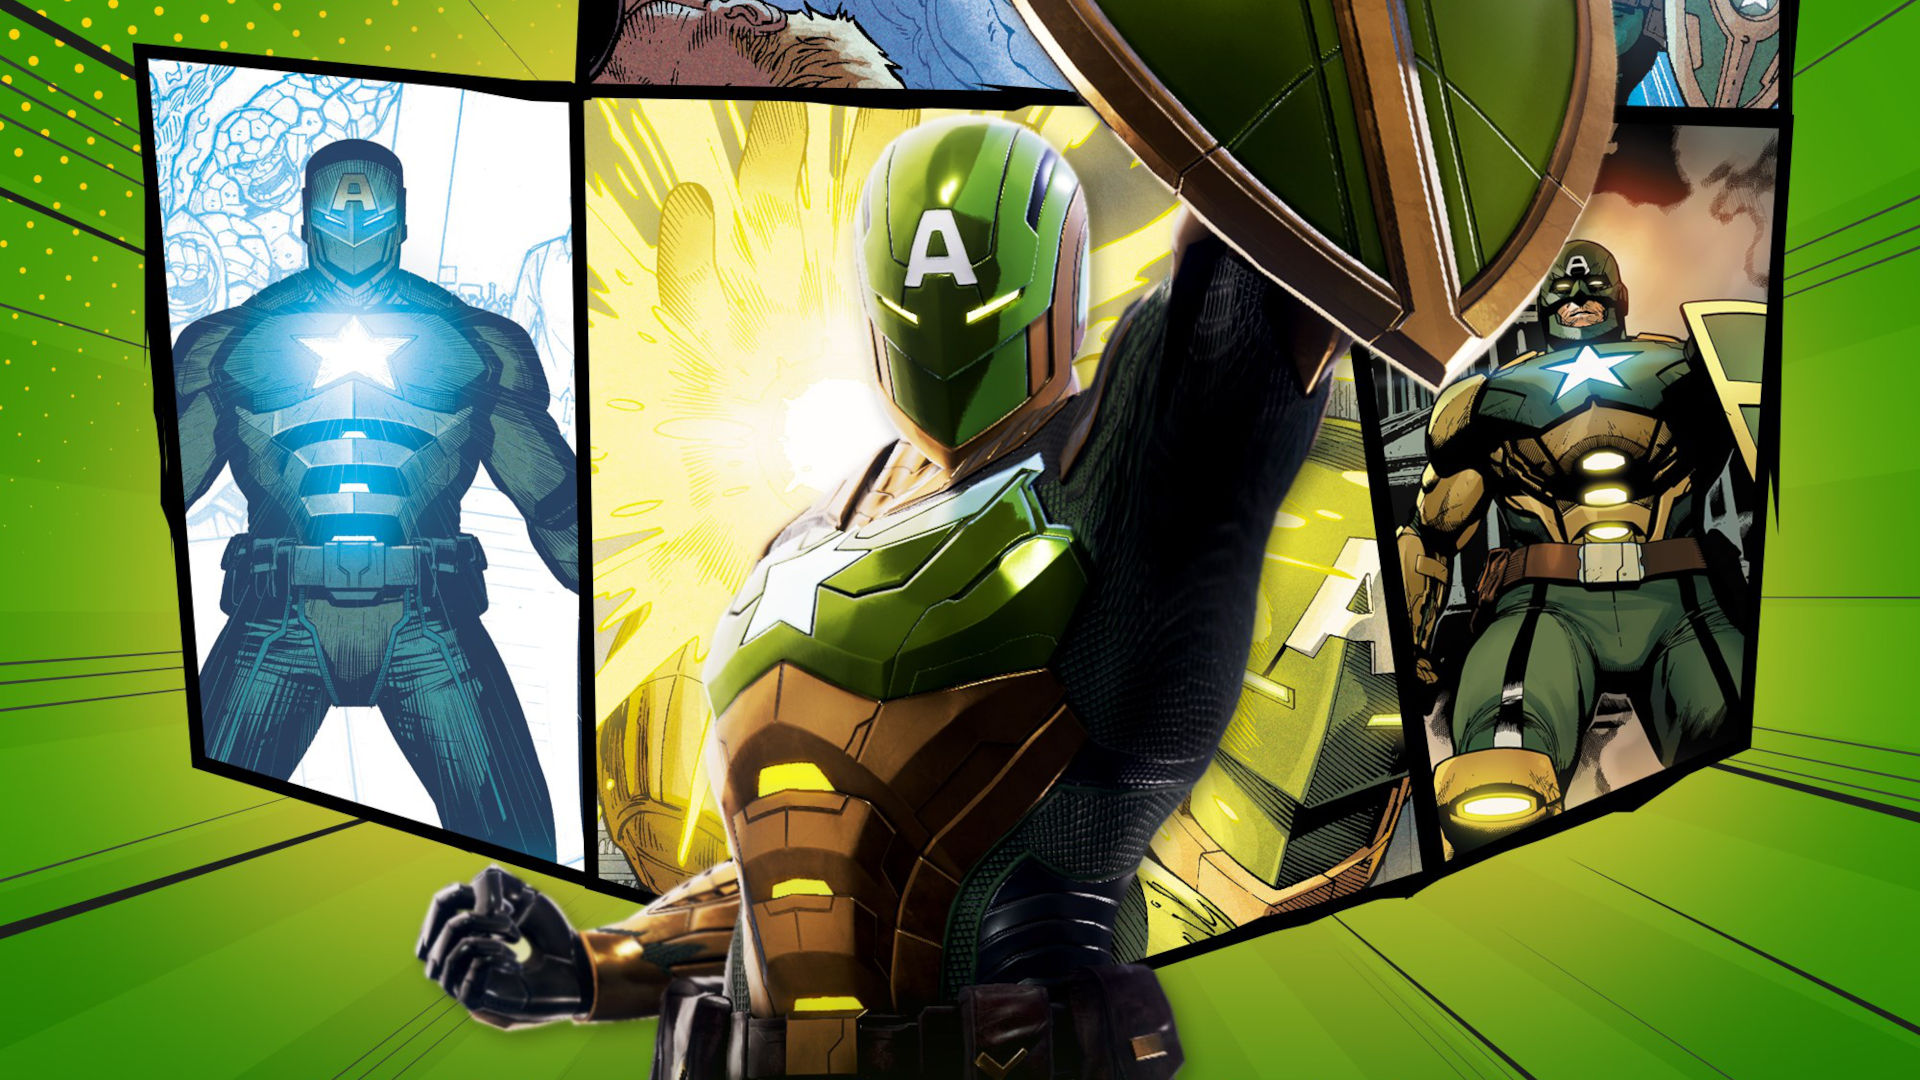 Marvel Future Revolution e No More Heroes são destaques nos lançamentos da  semana